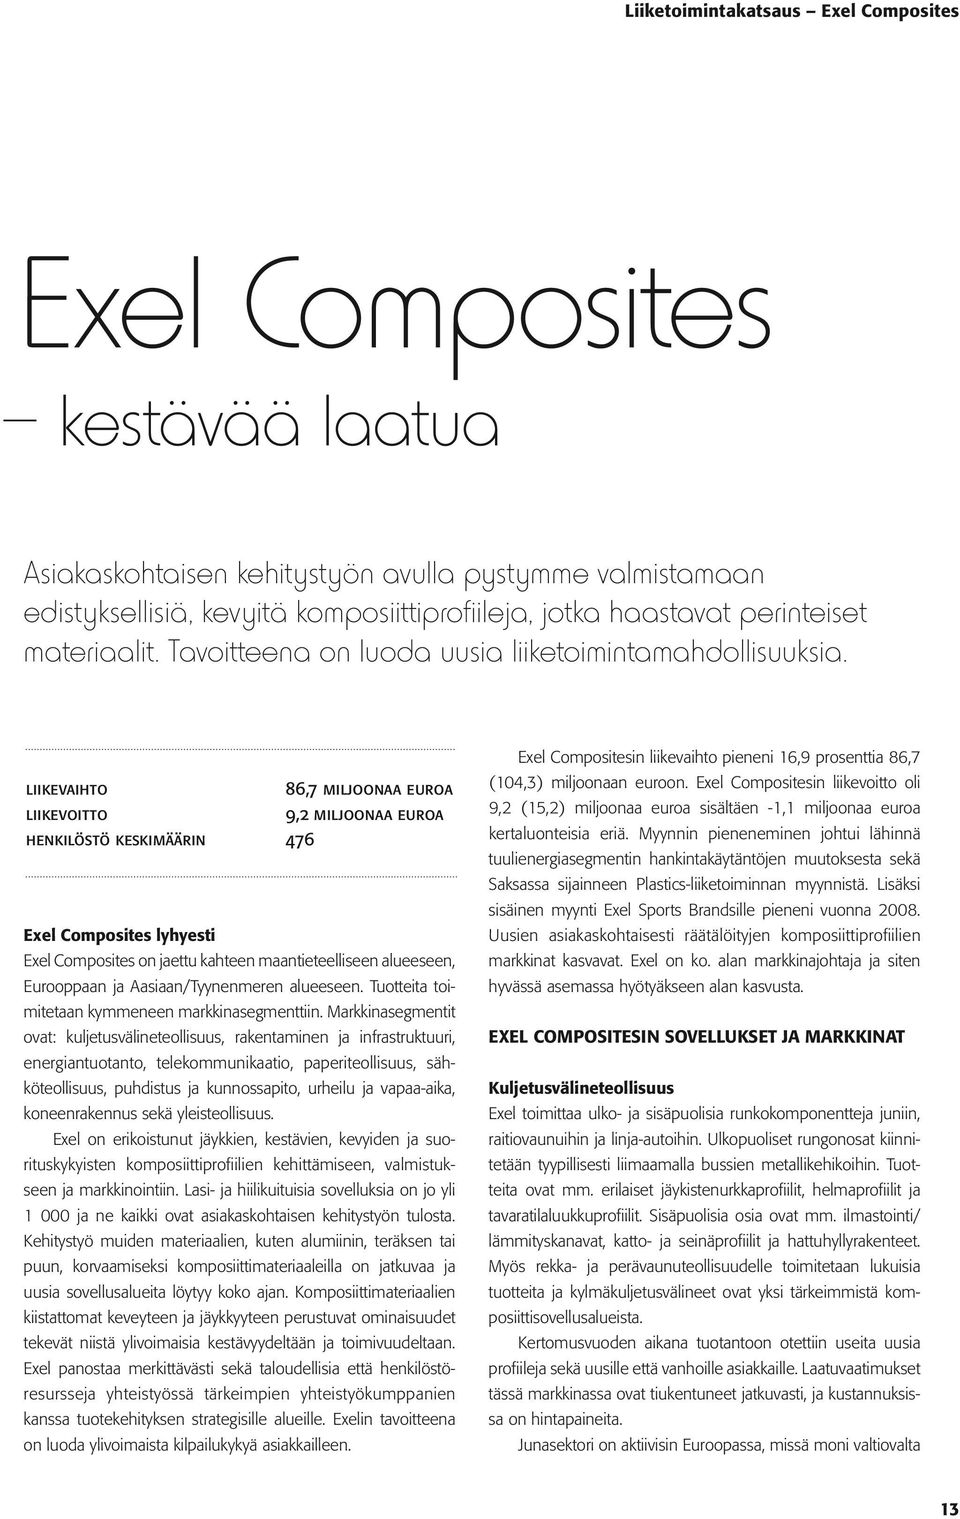 liikevaihto 86,7 miljoonaa euroa liikevoitto 9,2 miljoonaa euroa henkilöstö keskimäärin 476 Exel Composites lyhyesti Exel Composites on jaettu kahteen maantieteelliseen alueeseen, Eurooppaan ja